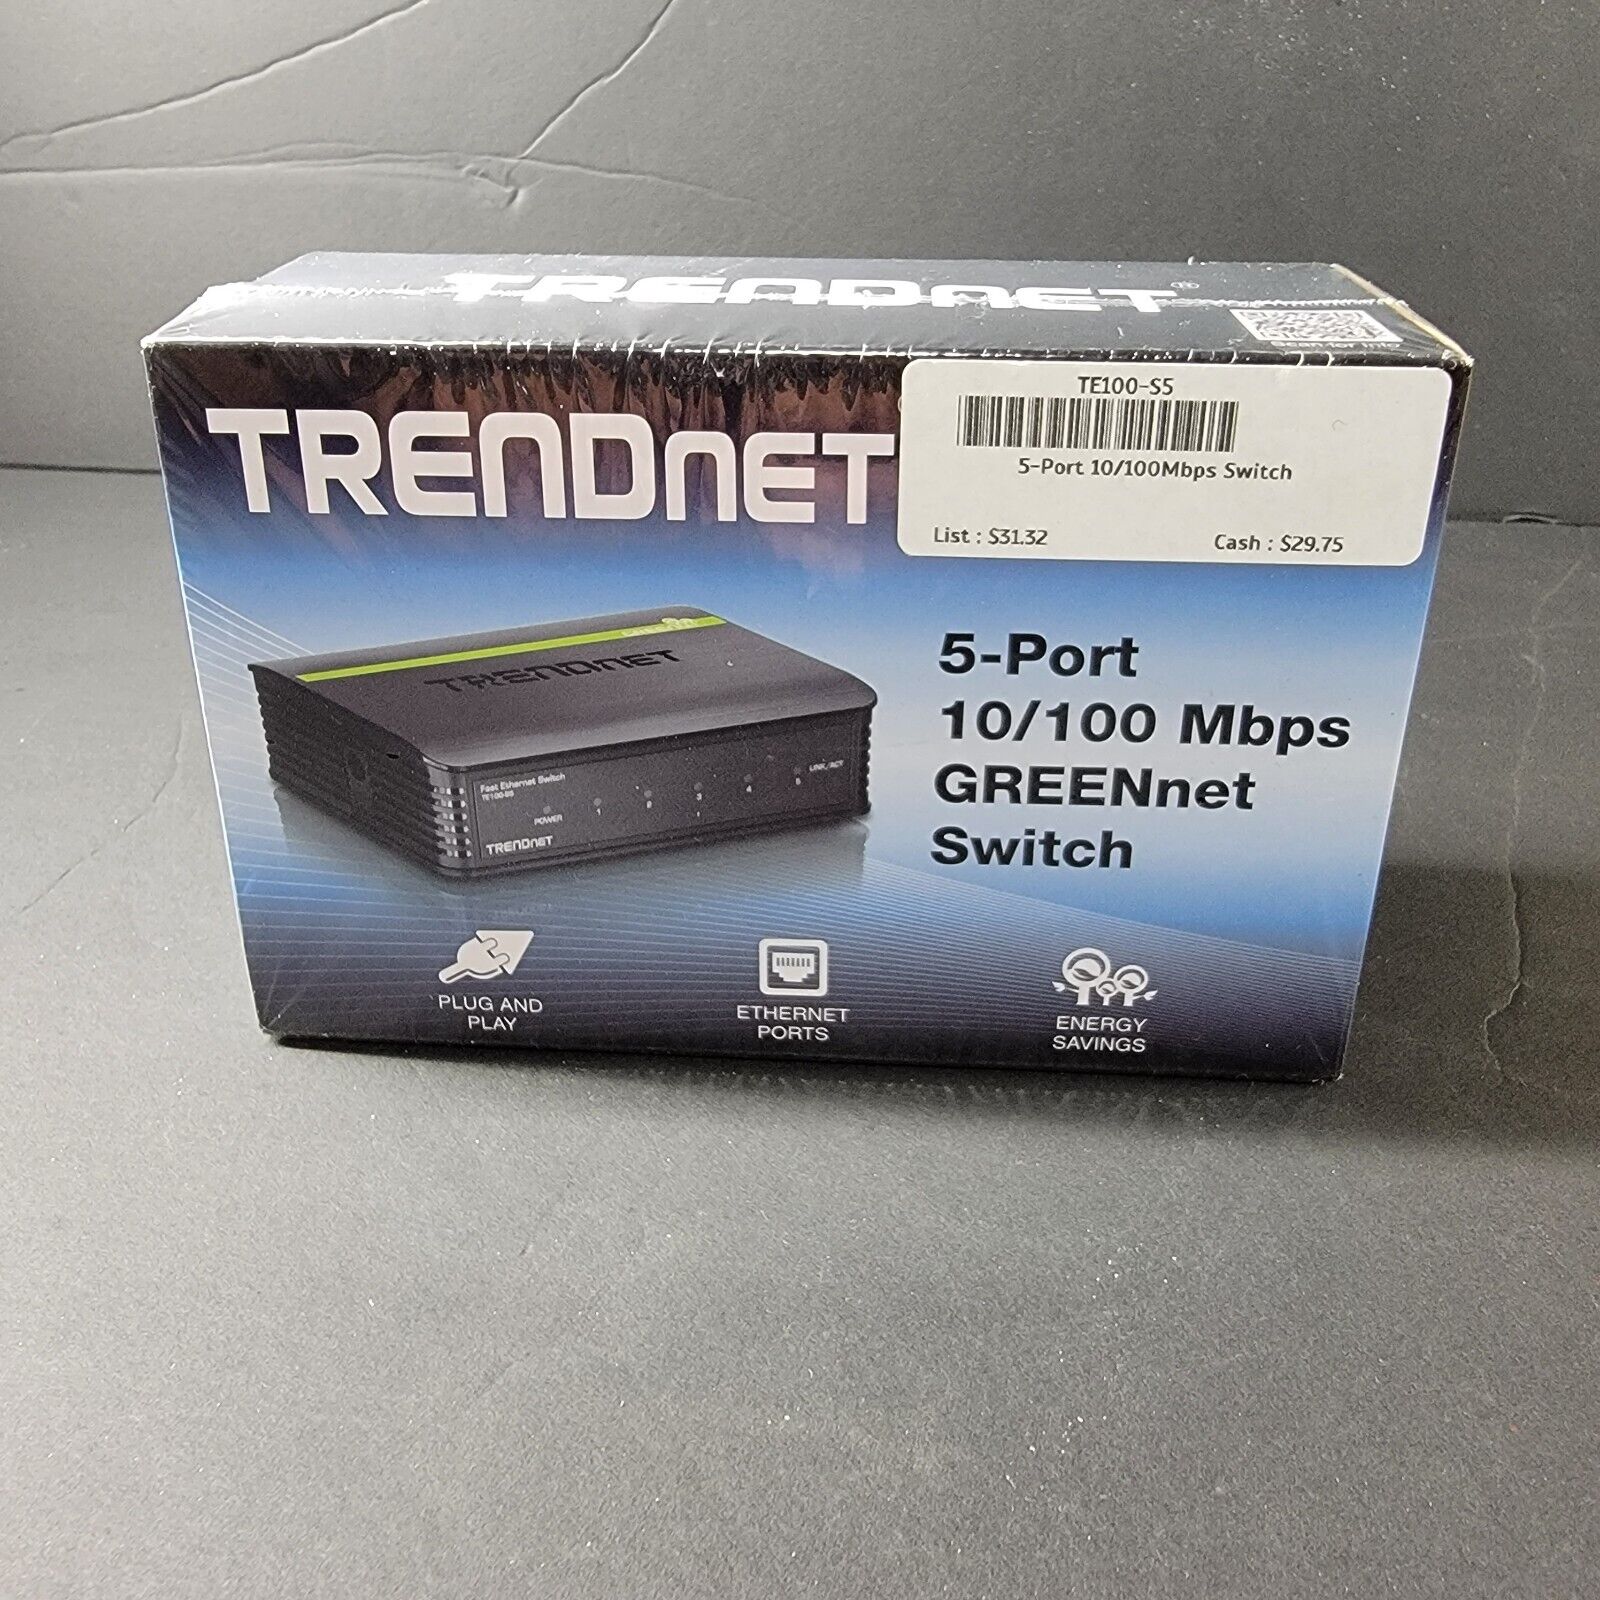 TRENDnet 5-Port  10/100 Mbps GREENnet Ethernet Desktop Te100-s5/a